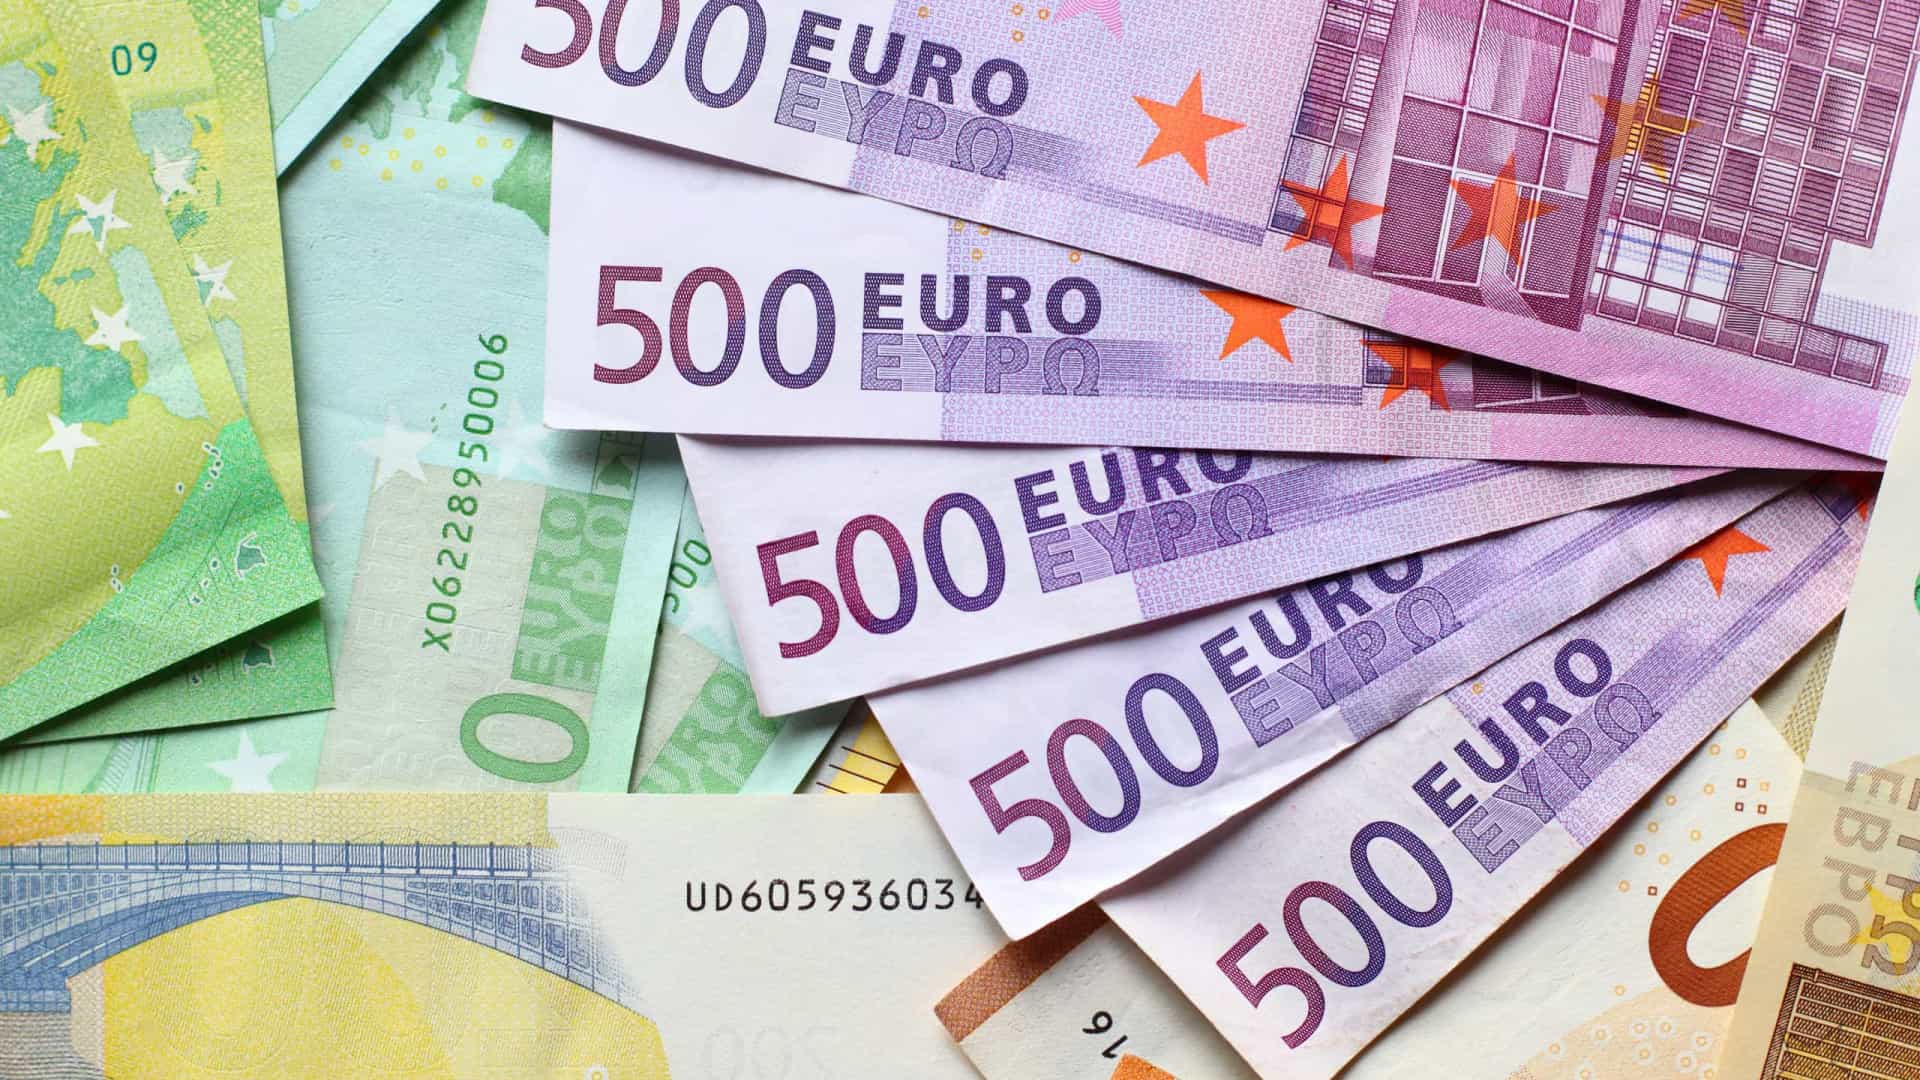 Euro po “shkrin” këto ditë, si përkthehet kjo në ekonomi